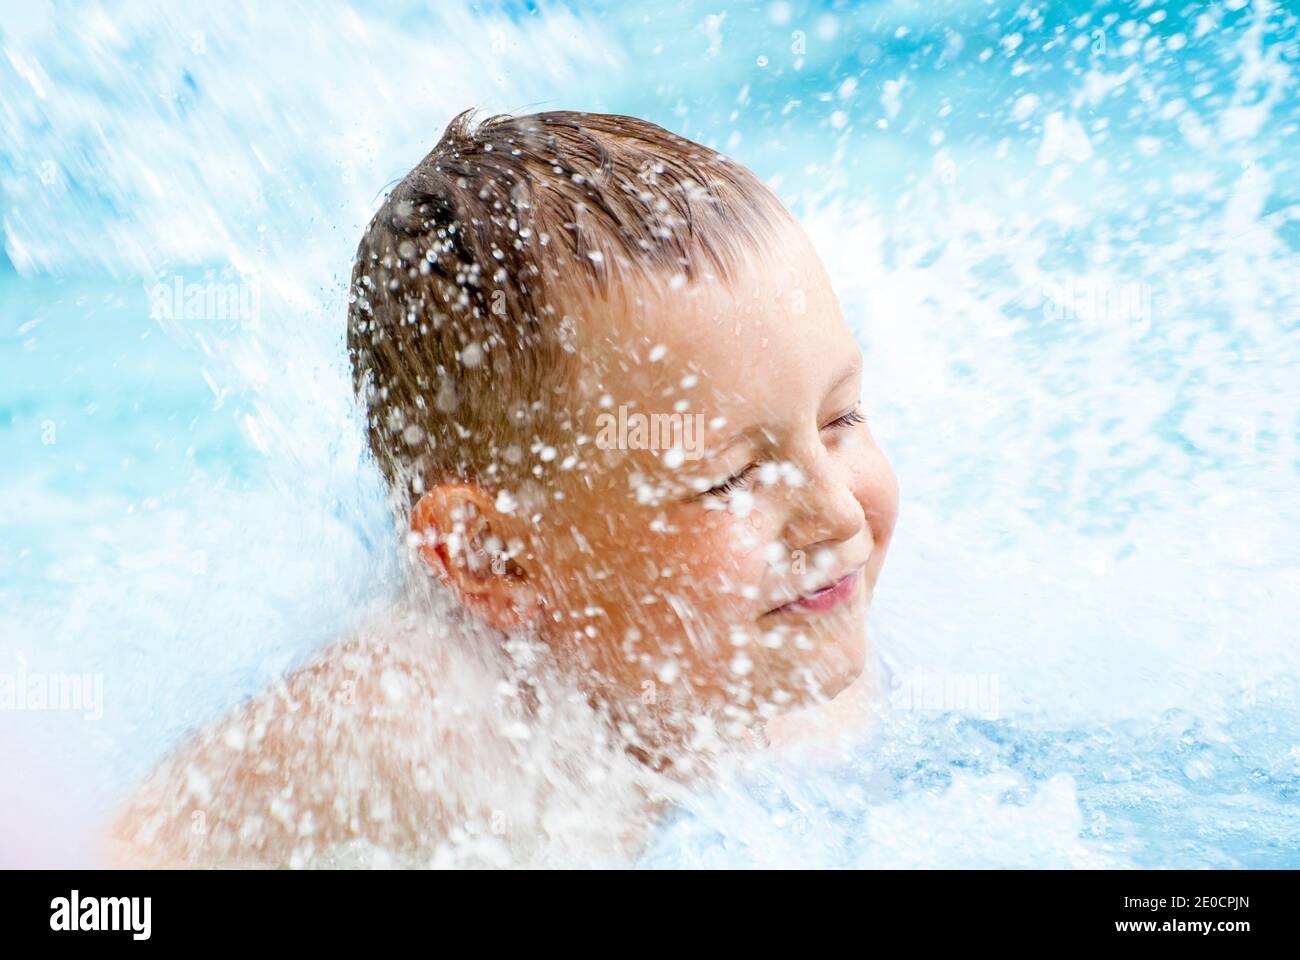 Ein Kind Junge spielt mit Wasser in Park Brunnen. Heißer Sommer. Stockfoto